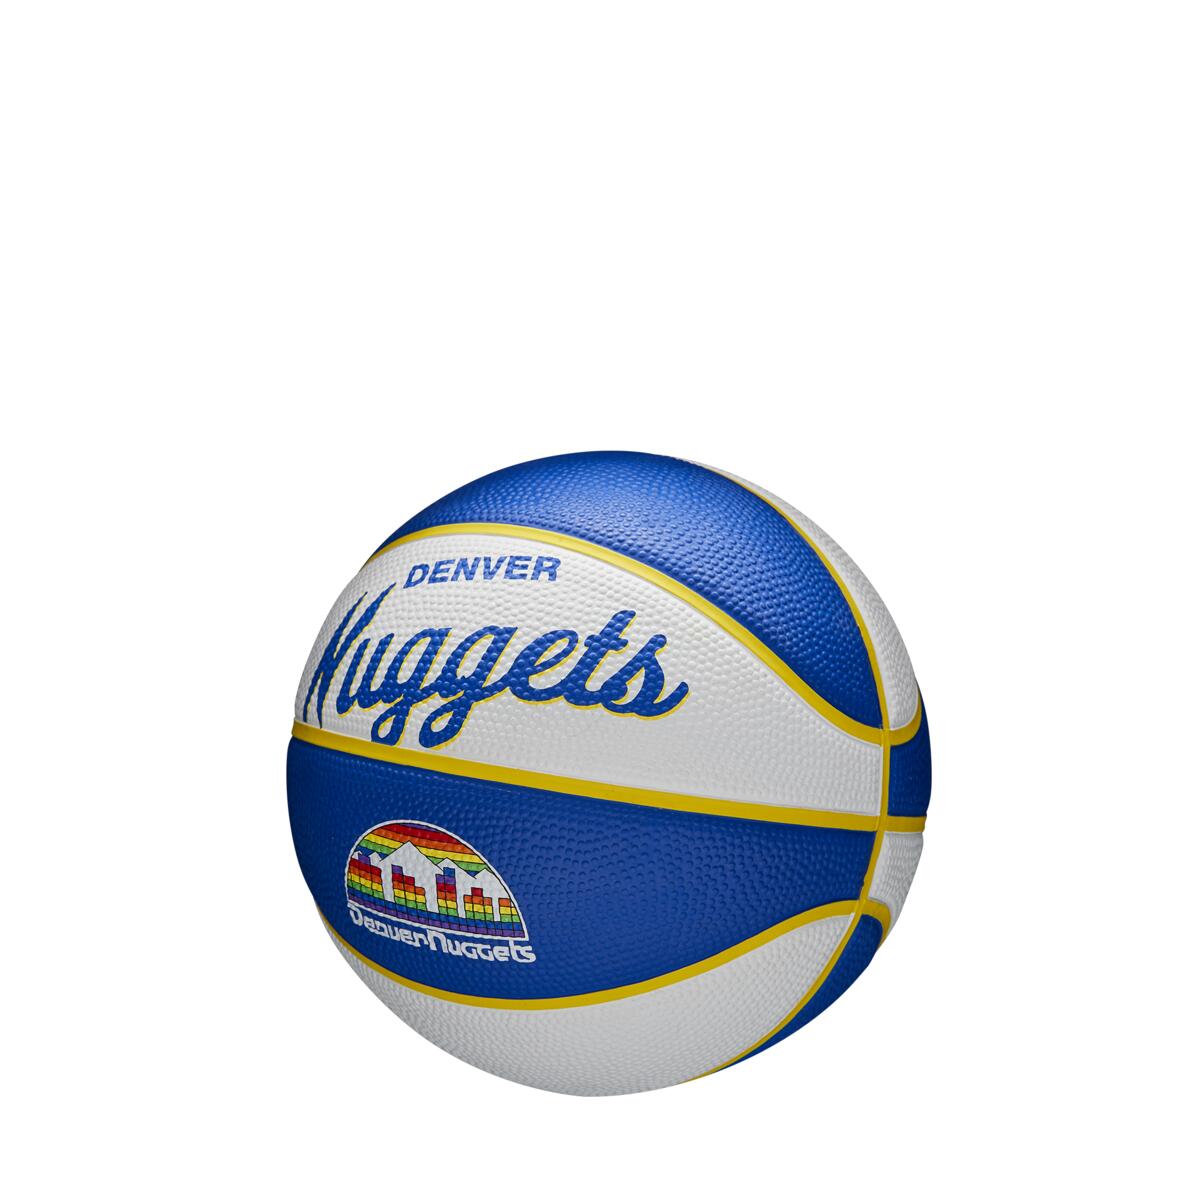 Ballons de basket NBA Retro Mini Denver Nuggets